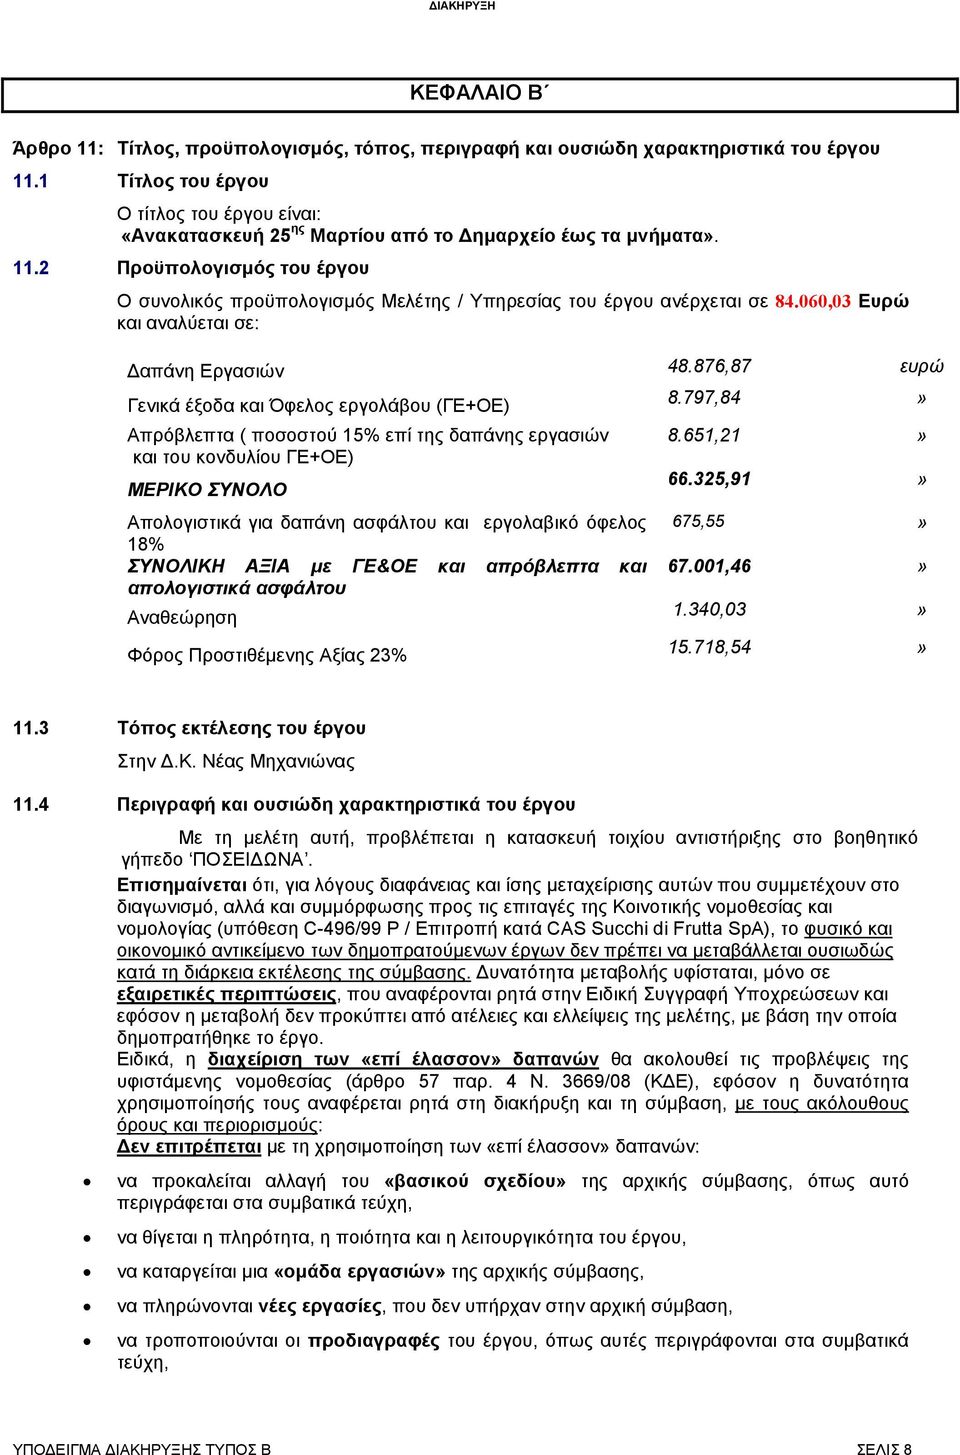 2 Προϋπολογισµός του έργου Ο συνολικός προϋπολογισµός Μελέτης / Υπηρεσίας του έργου ανέρχεται σε 84.060,03 Ευρώ και αναλύεται σε: απάνη Εργασιών 48.